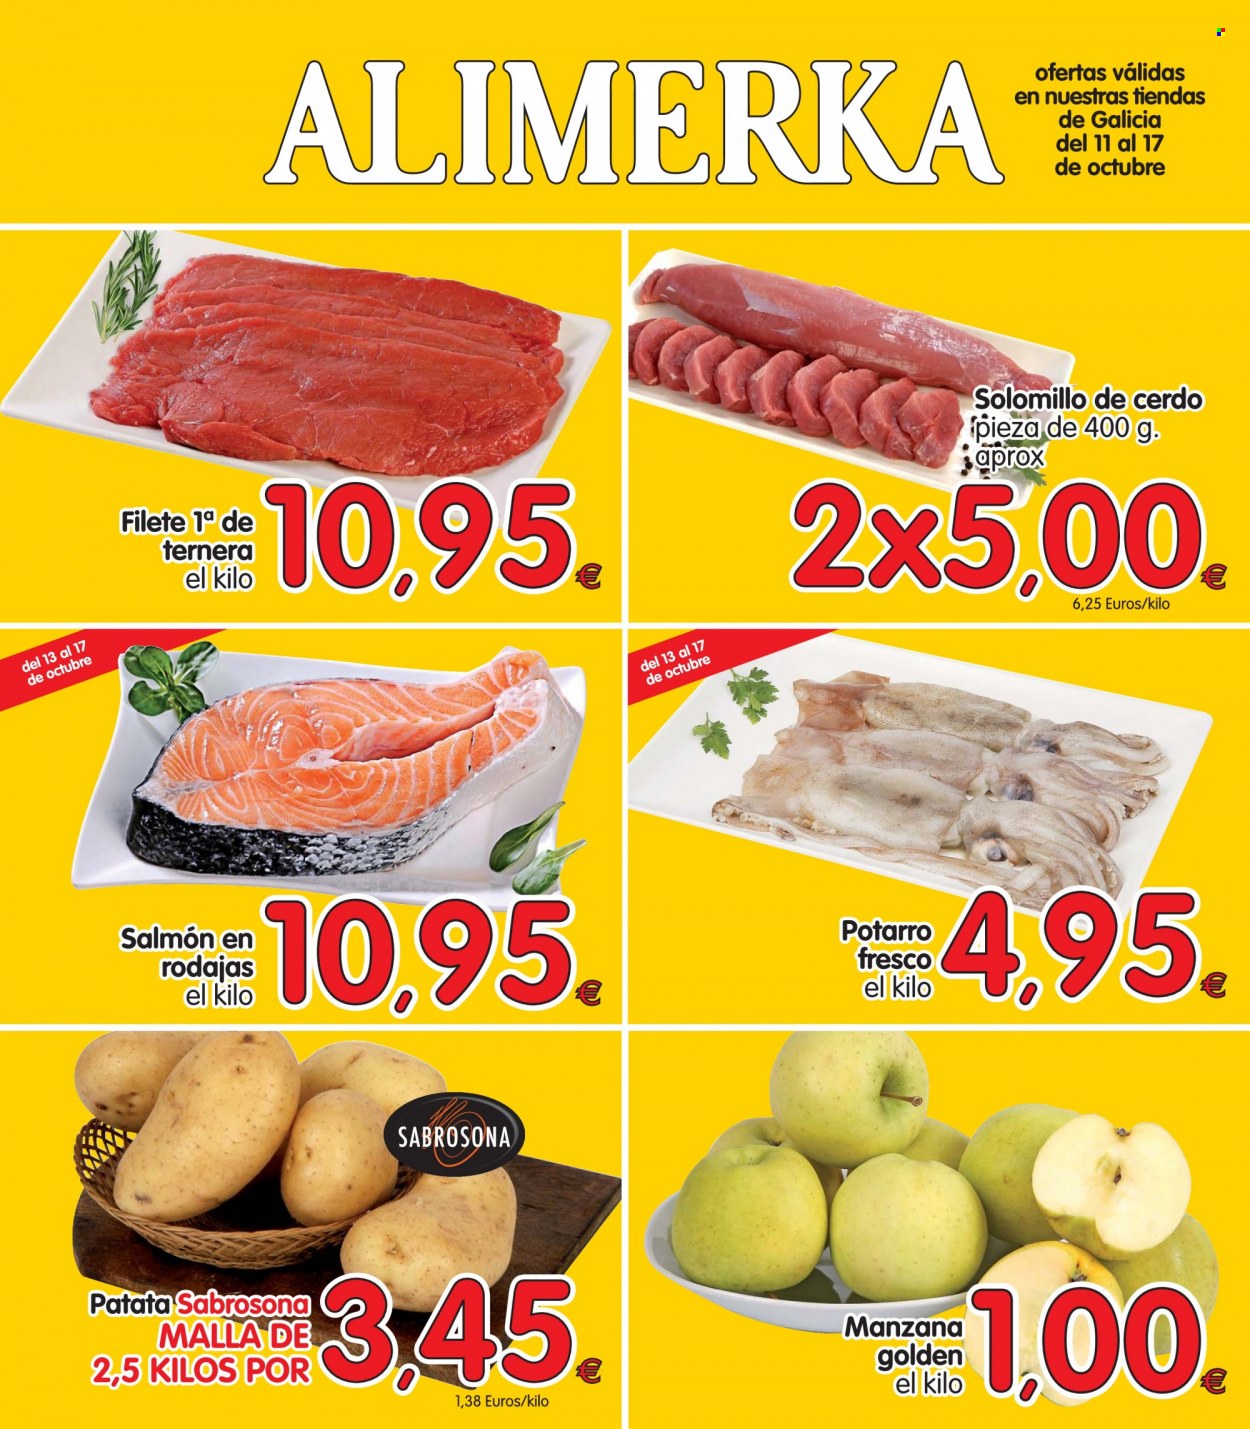 thumbnail - Folleto actual Alimerka - 11/10/21 - 17/10/21 - Ventas - solomillo, solomillo de cerdo, carne de ternera, manzanas, patatas, salmón. Página 1.